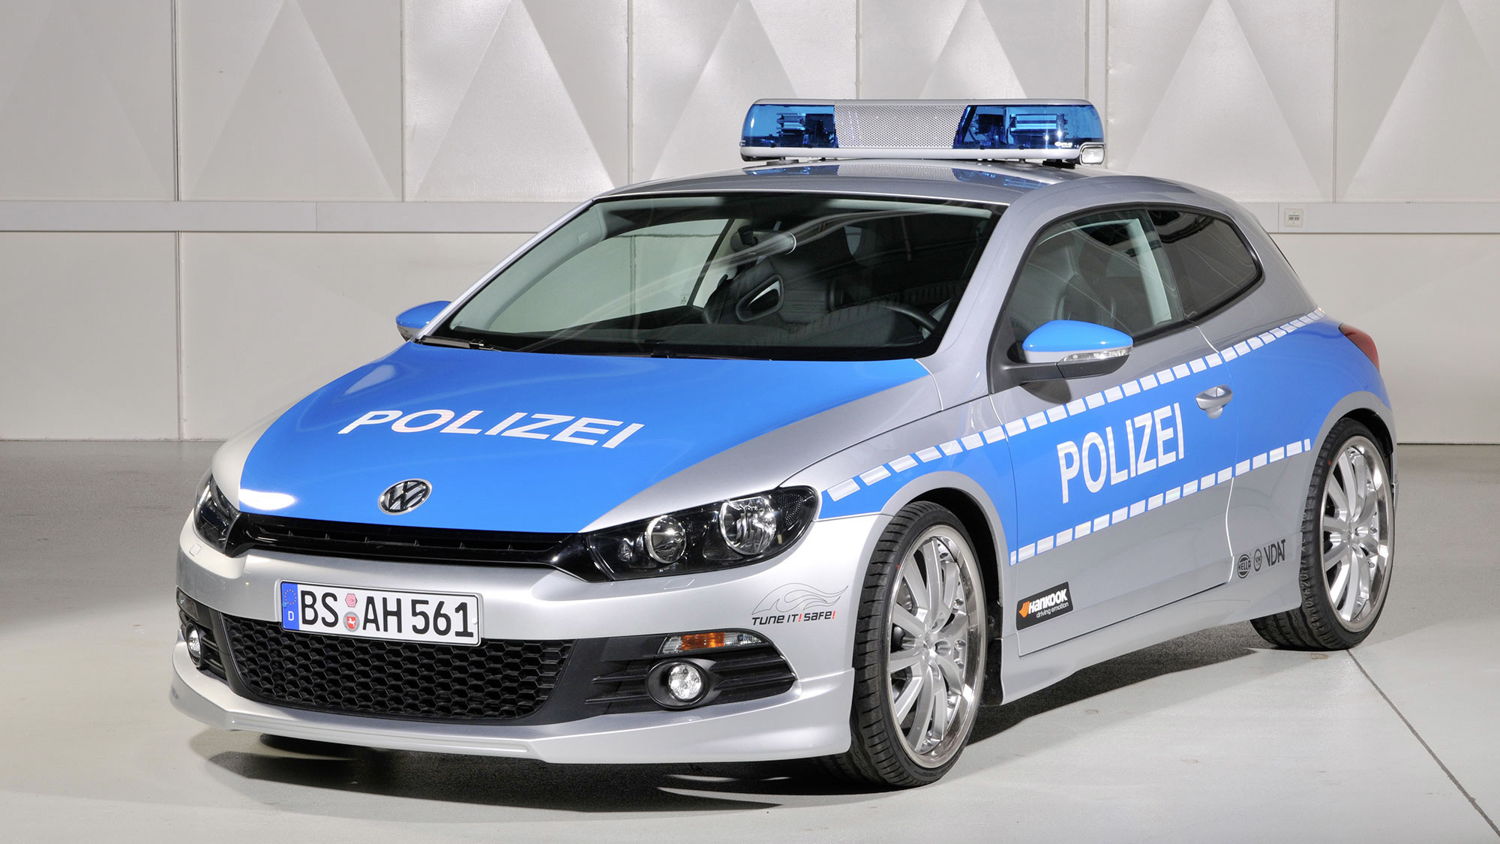 Scirocco MK II: El auto soñado por un policía